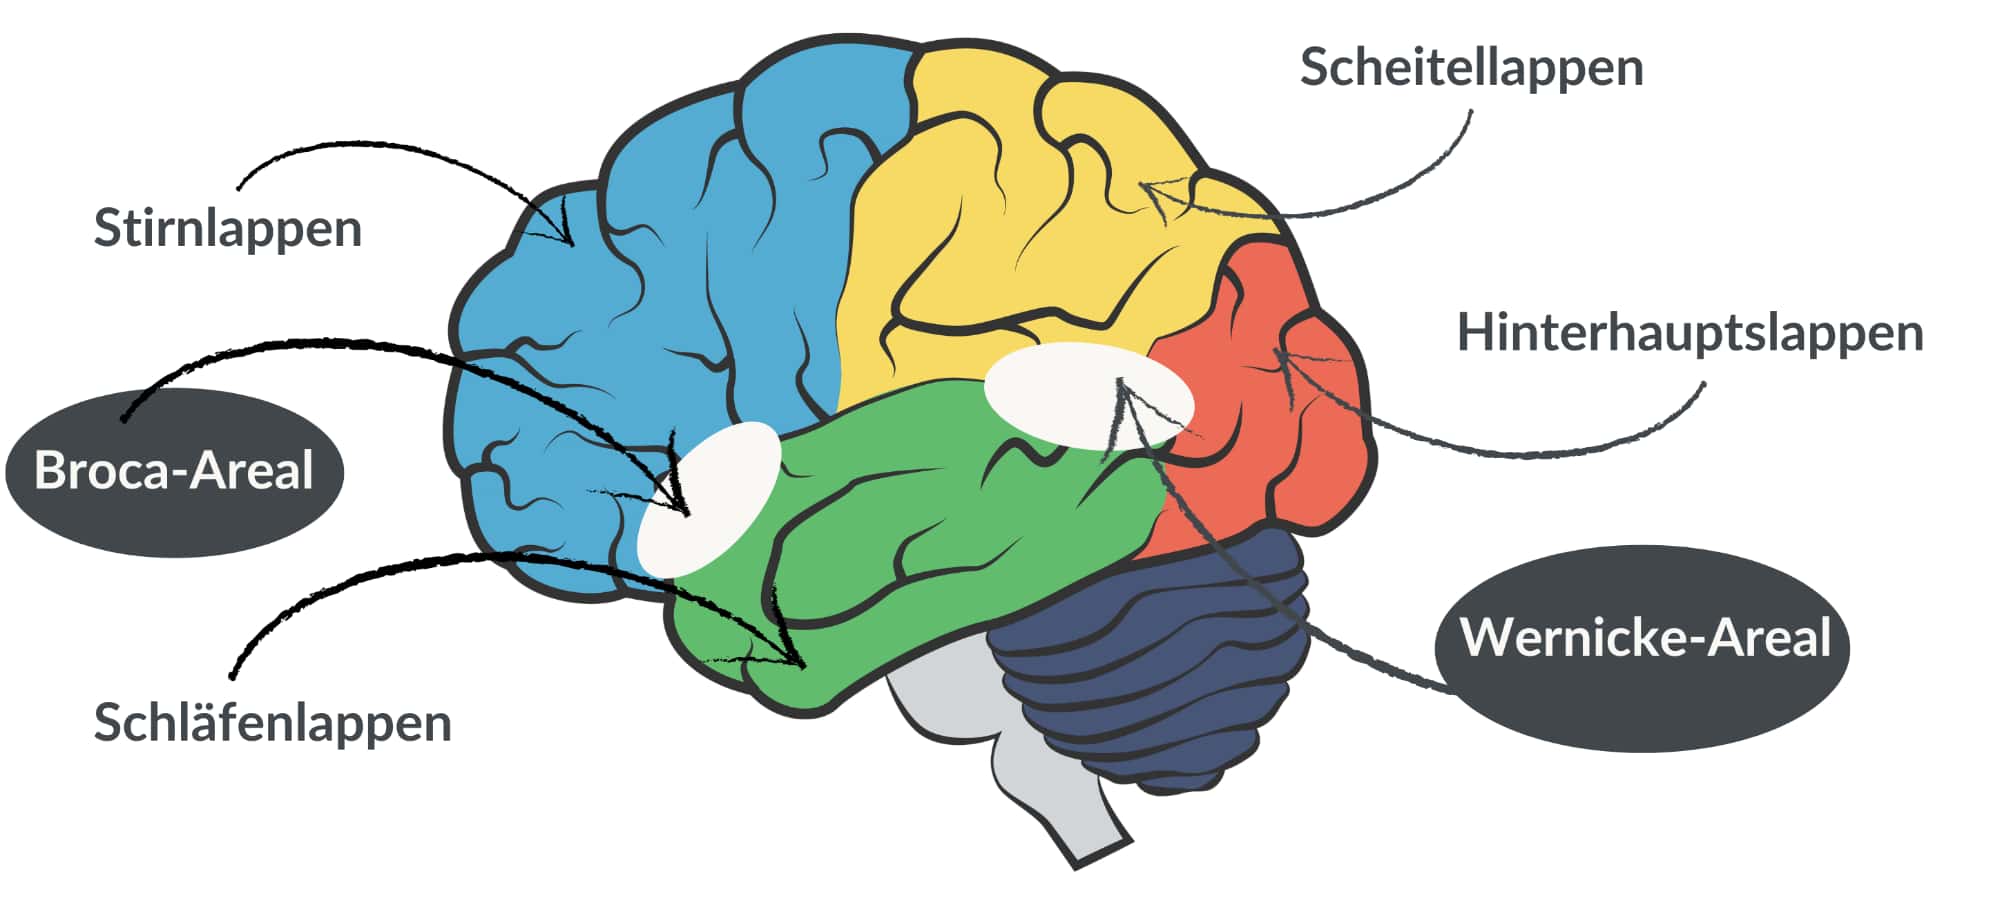 Menschliches Gehirn mit Broca- und Wernicke-Areal